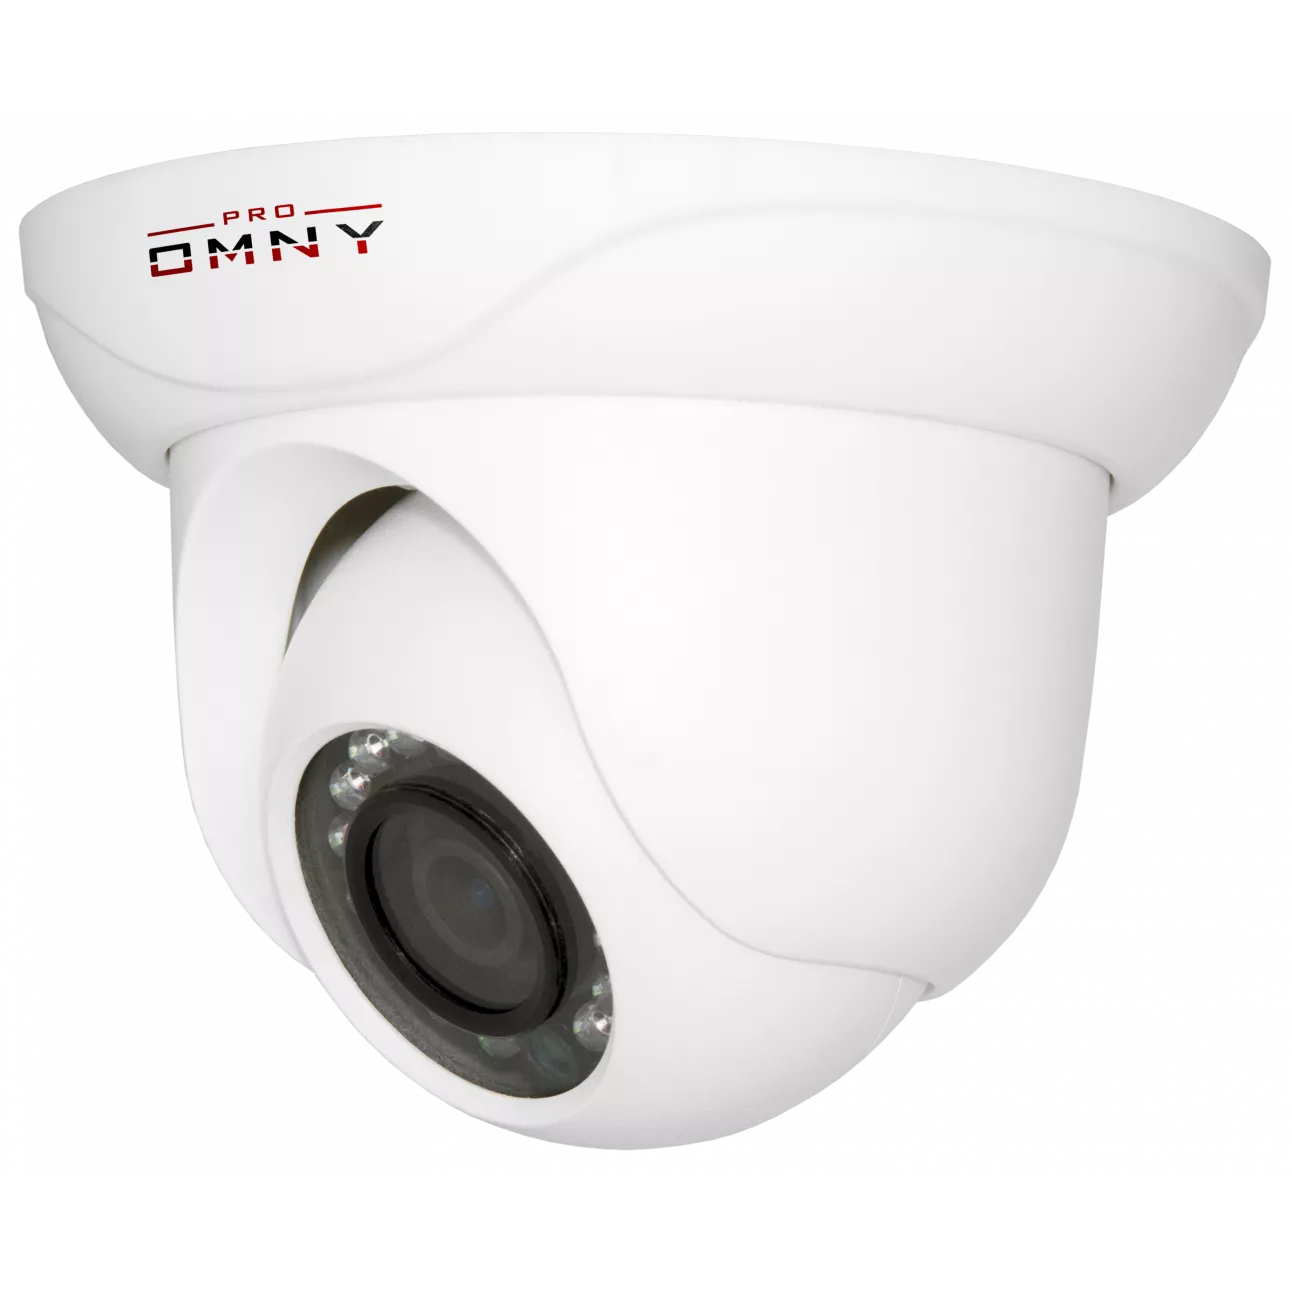 (ЗАМЕНЕНА НА 404М)IP камера OMNY 404 PRO купольная мини 1080p, c ИК подсветкой, 2.8мм, 12В/PoE, EasyMic